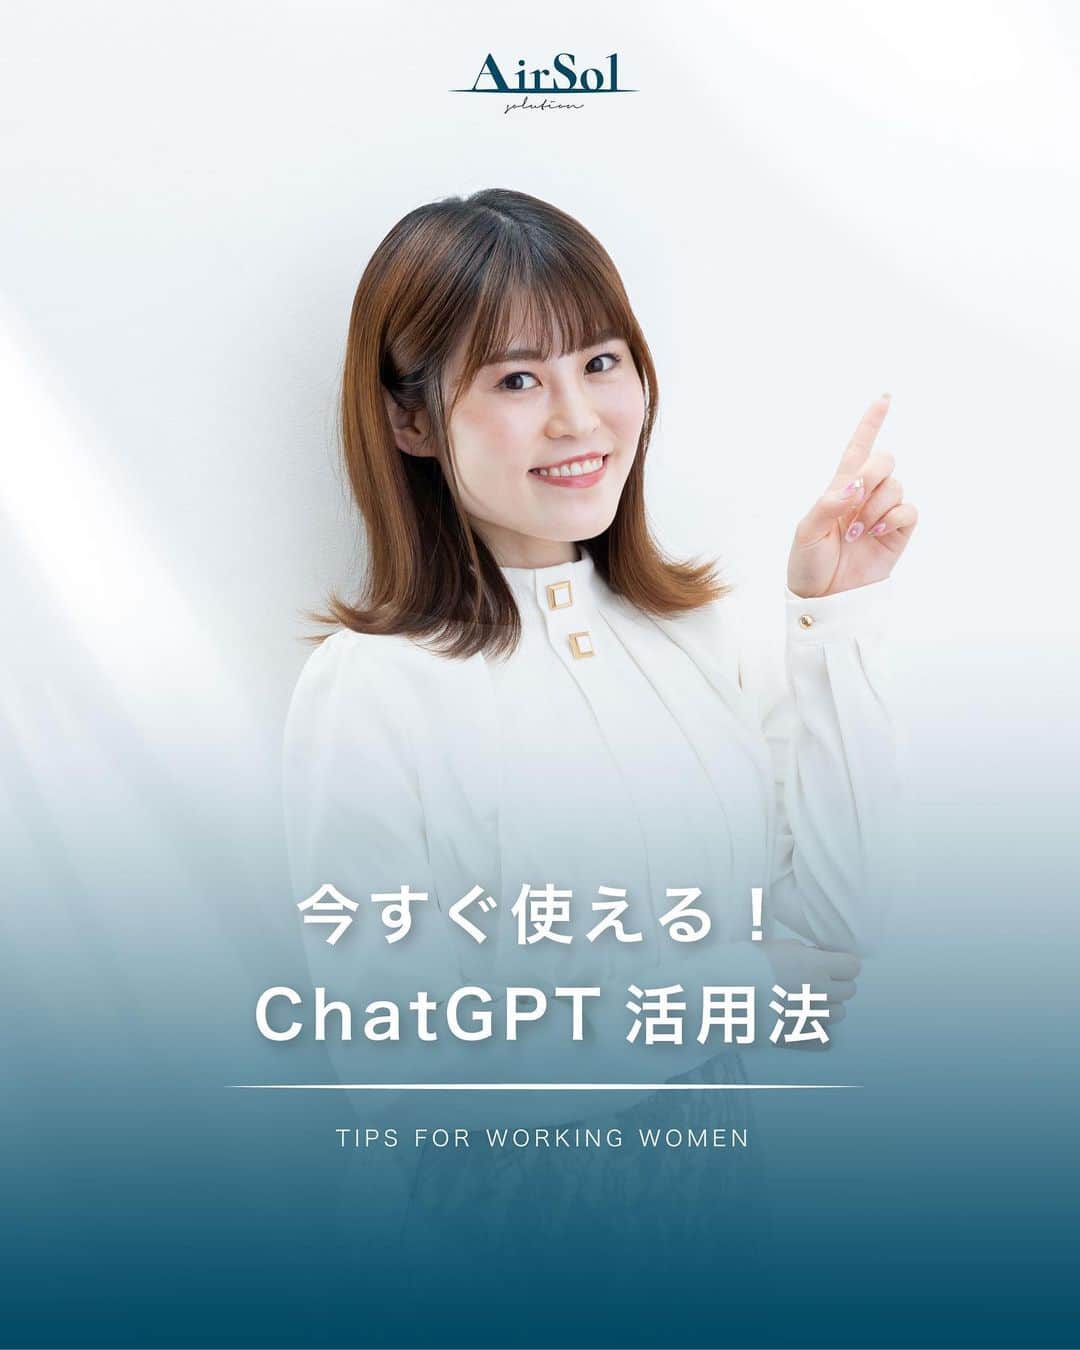 AirSolのインスタグラム：「《今すぐ使える！ChatGPTの活用法》 皆さん、ChatGPTがどのようなものなのかご存知ですか？ ChatGPTとは、ユーザーが入力した質問に対して、まるで人間のように自然な対話形式でAIが答えるチャットサービスです。 まだ使ったことがない、もしくは使いこなせていないという方も多いのではないでしょうか？ 大変便利なChatGPT。今回は活用法とポイントをご紹介します！  <ChatGPTでできること>  ・調べる ・アイデア出し ・文章の作成 ・翻訳 ・要約  <指示出しのポイント>  ・何かを尋ねる前に、まず明確な質問や会話の文脈を考えましょう。 ・具体的なトピックや情報を入力することで、より良い回答を得ることができます。 (例：文章の作成を指示する時は誰宛てのものなのかも明記する、要約を指示するときは文字数制限をする) ・文章やフレーズを入力する際には、できるだけ短く明確な形式で入力します。  <ChatGPTの注意点>  ・ChatGPTは、まだ開発中のAIなので、誤った情報や不正確な情報を返すこともあります。 ・ChatGPT3(無料版)は2021年9月までの情報に基づいて回答します。最新の情報や出来事に関しては、知識は更新されておらず、正確な情報が提供できません。  <ChatGPTとBirdの併用> ・BirdはChatGPTと同様に会話型人工知能ですが、Googleが開発・提供しているものです。 ChatGPT3と違いは所持している知識が日々更新されています。 ・ChatGPTとBirdを併用することで、より効率的に仕事をすることができます。  いかがでしたか？ChatGPTとBirdをうまく活用して、時間の効率化を図ってみましょう！  ————————————-  AirSol　HPでは企業情報、事業内容、スタッフ紹介等発信しています。 ぜひプロフィール欄のUPLからチェックしてみてください。 @airsol_jp   —————————————  #chatgpt#ai#人工知能#バード#アラサーOL#アラフォーOL#便利ツール#時間短縮#効率化#仕事術#仕事効率化#大人の勉強垢#社会人の勉強垢#エアソル#airsol」